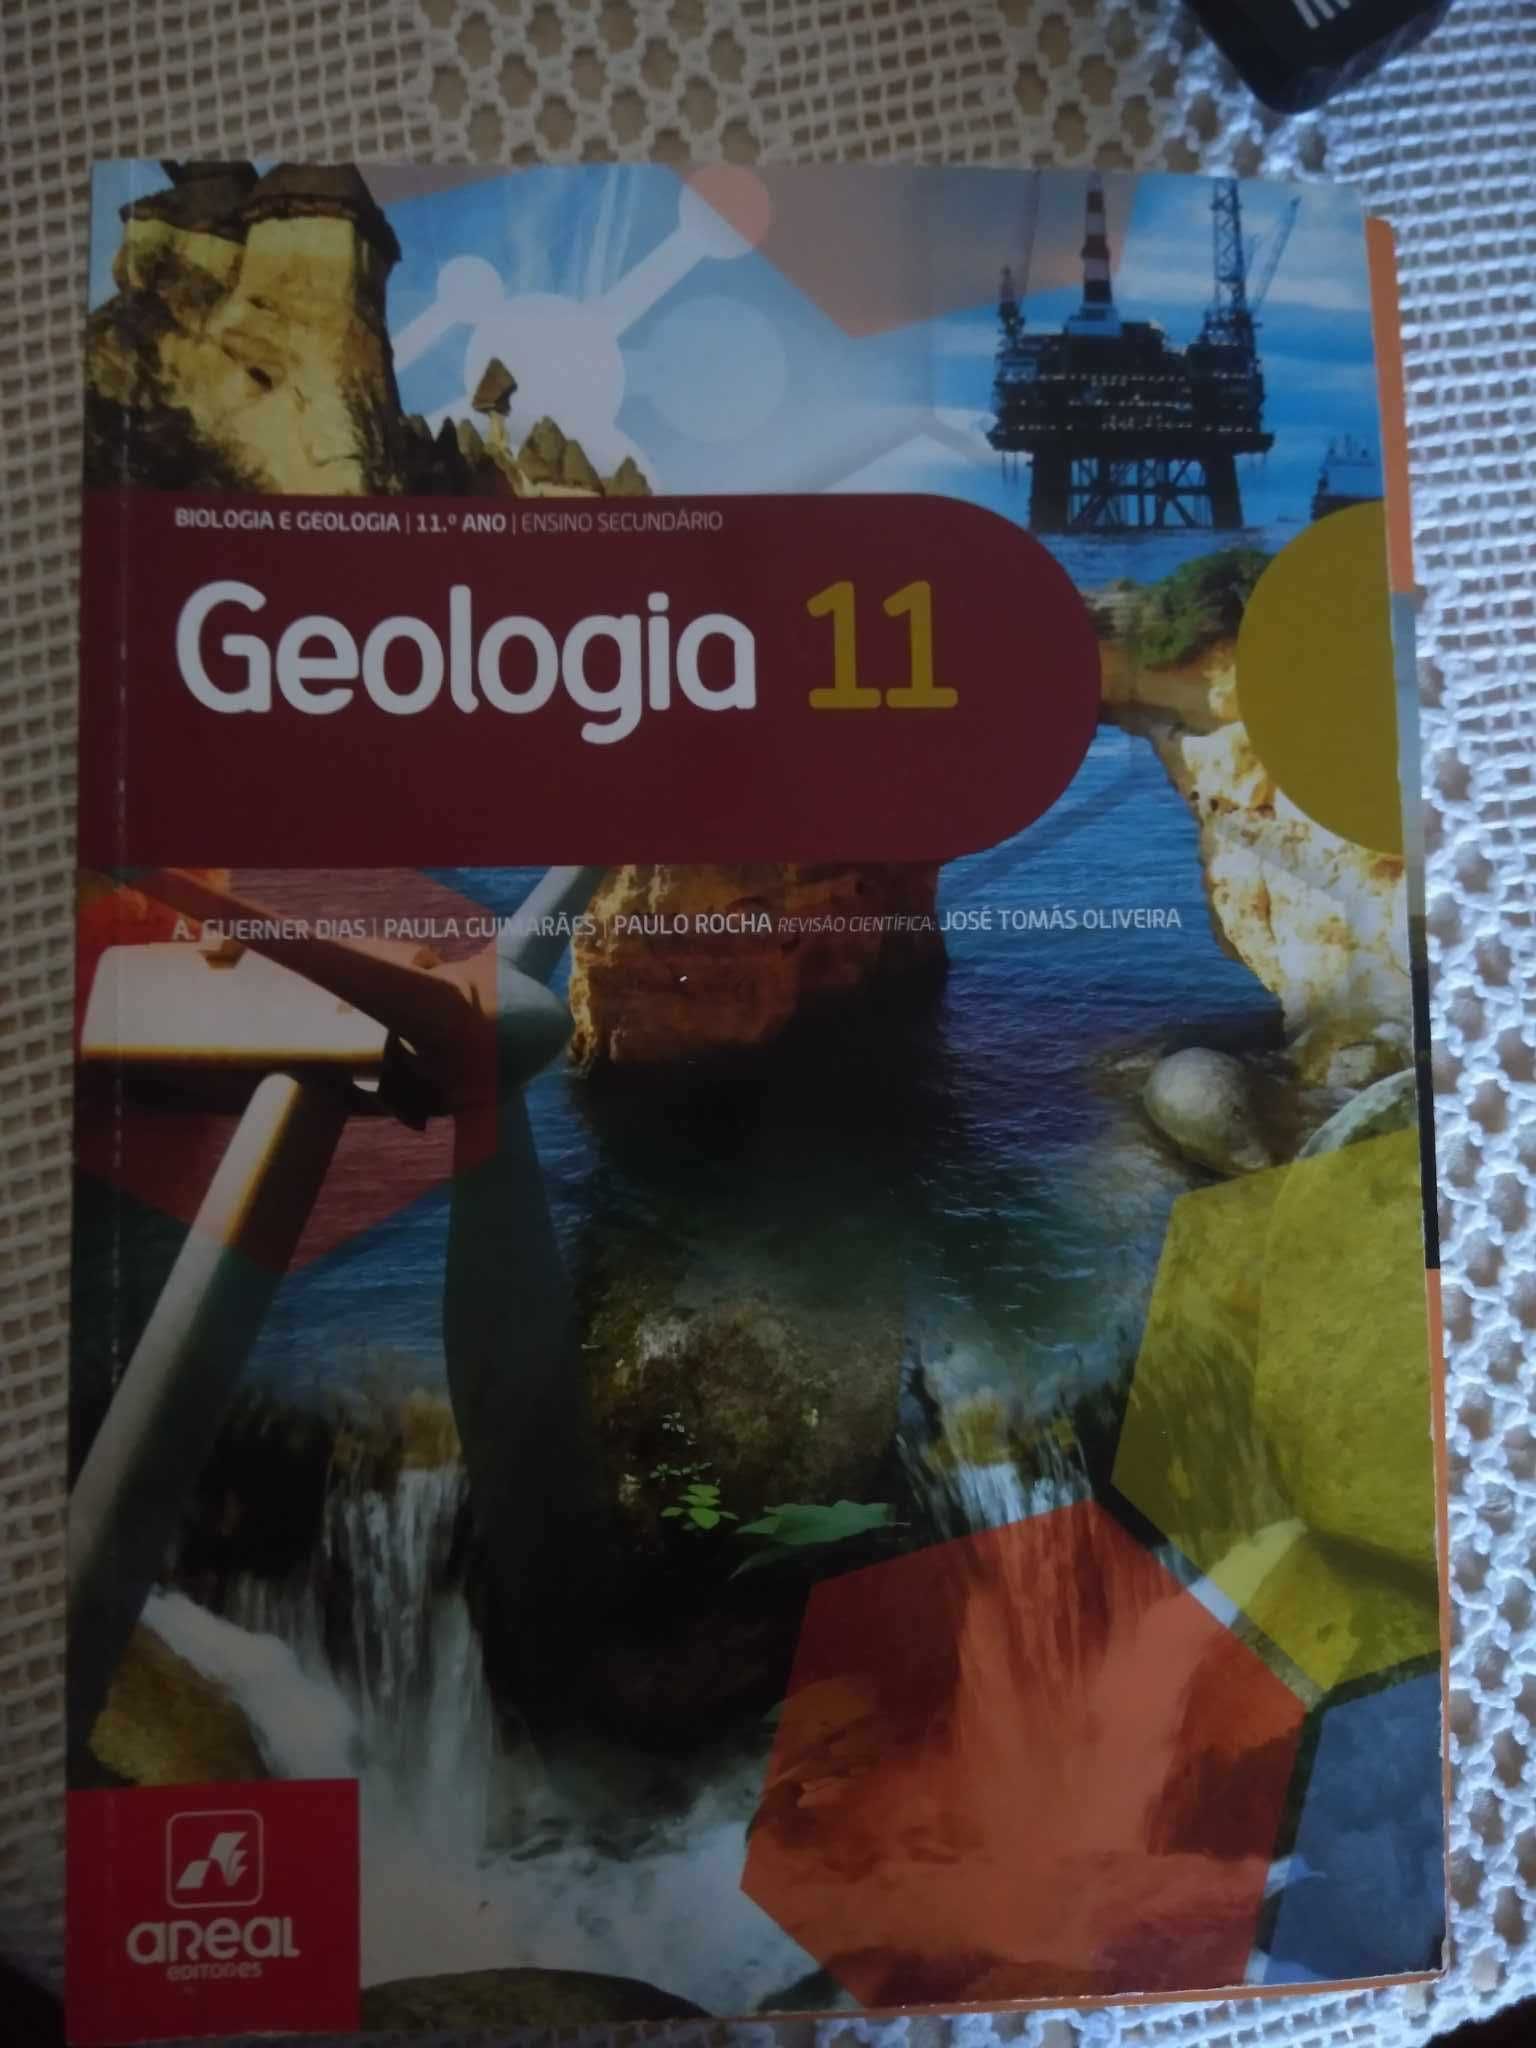 Livros biologia e geologia e preparação para os exames nacionais!